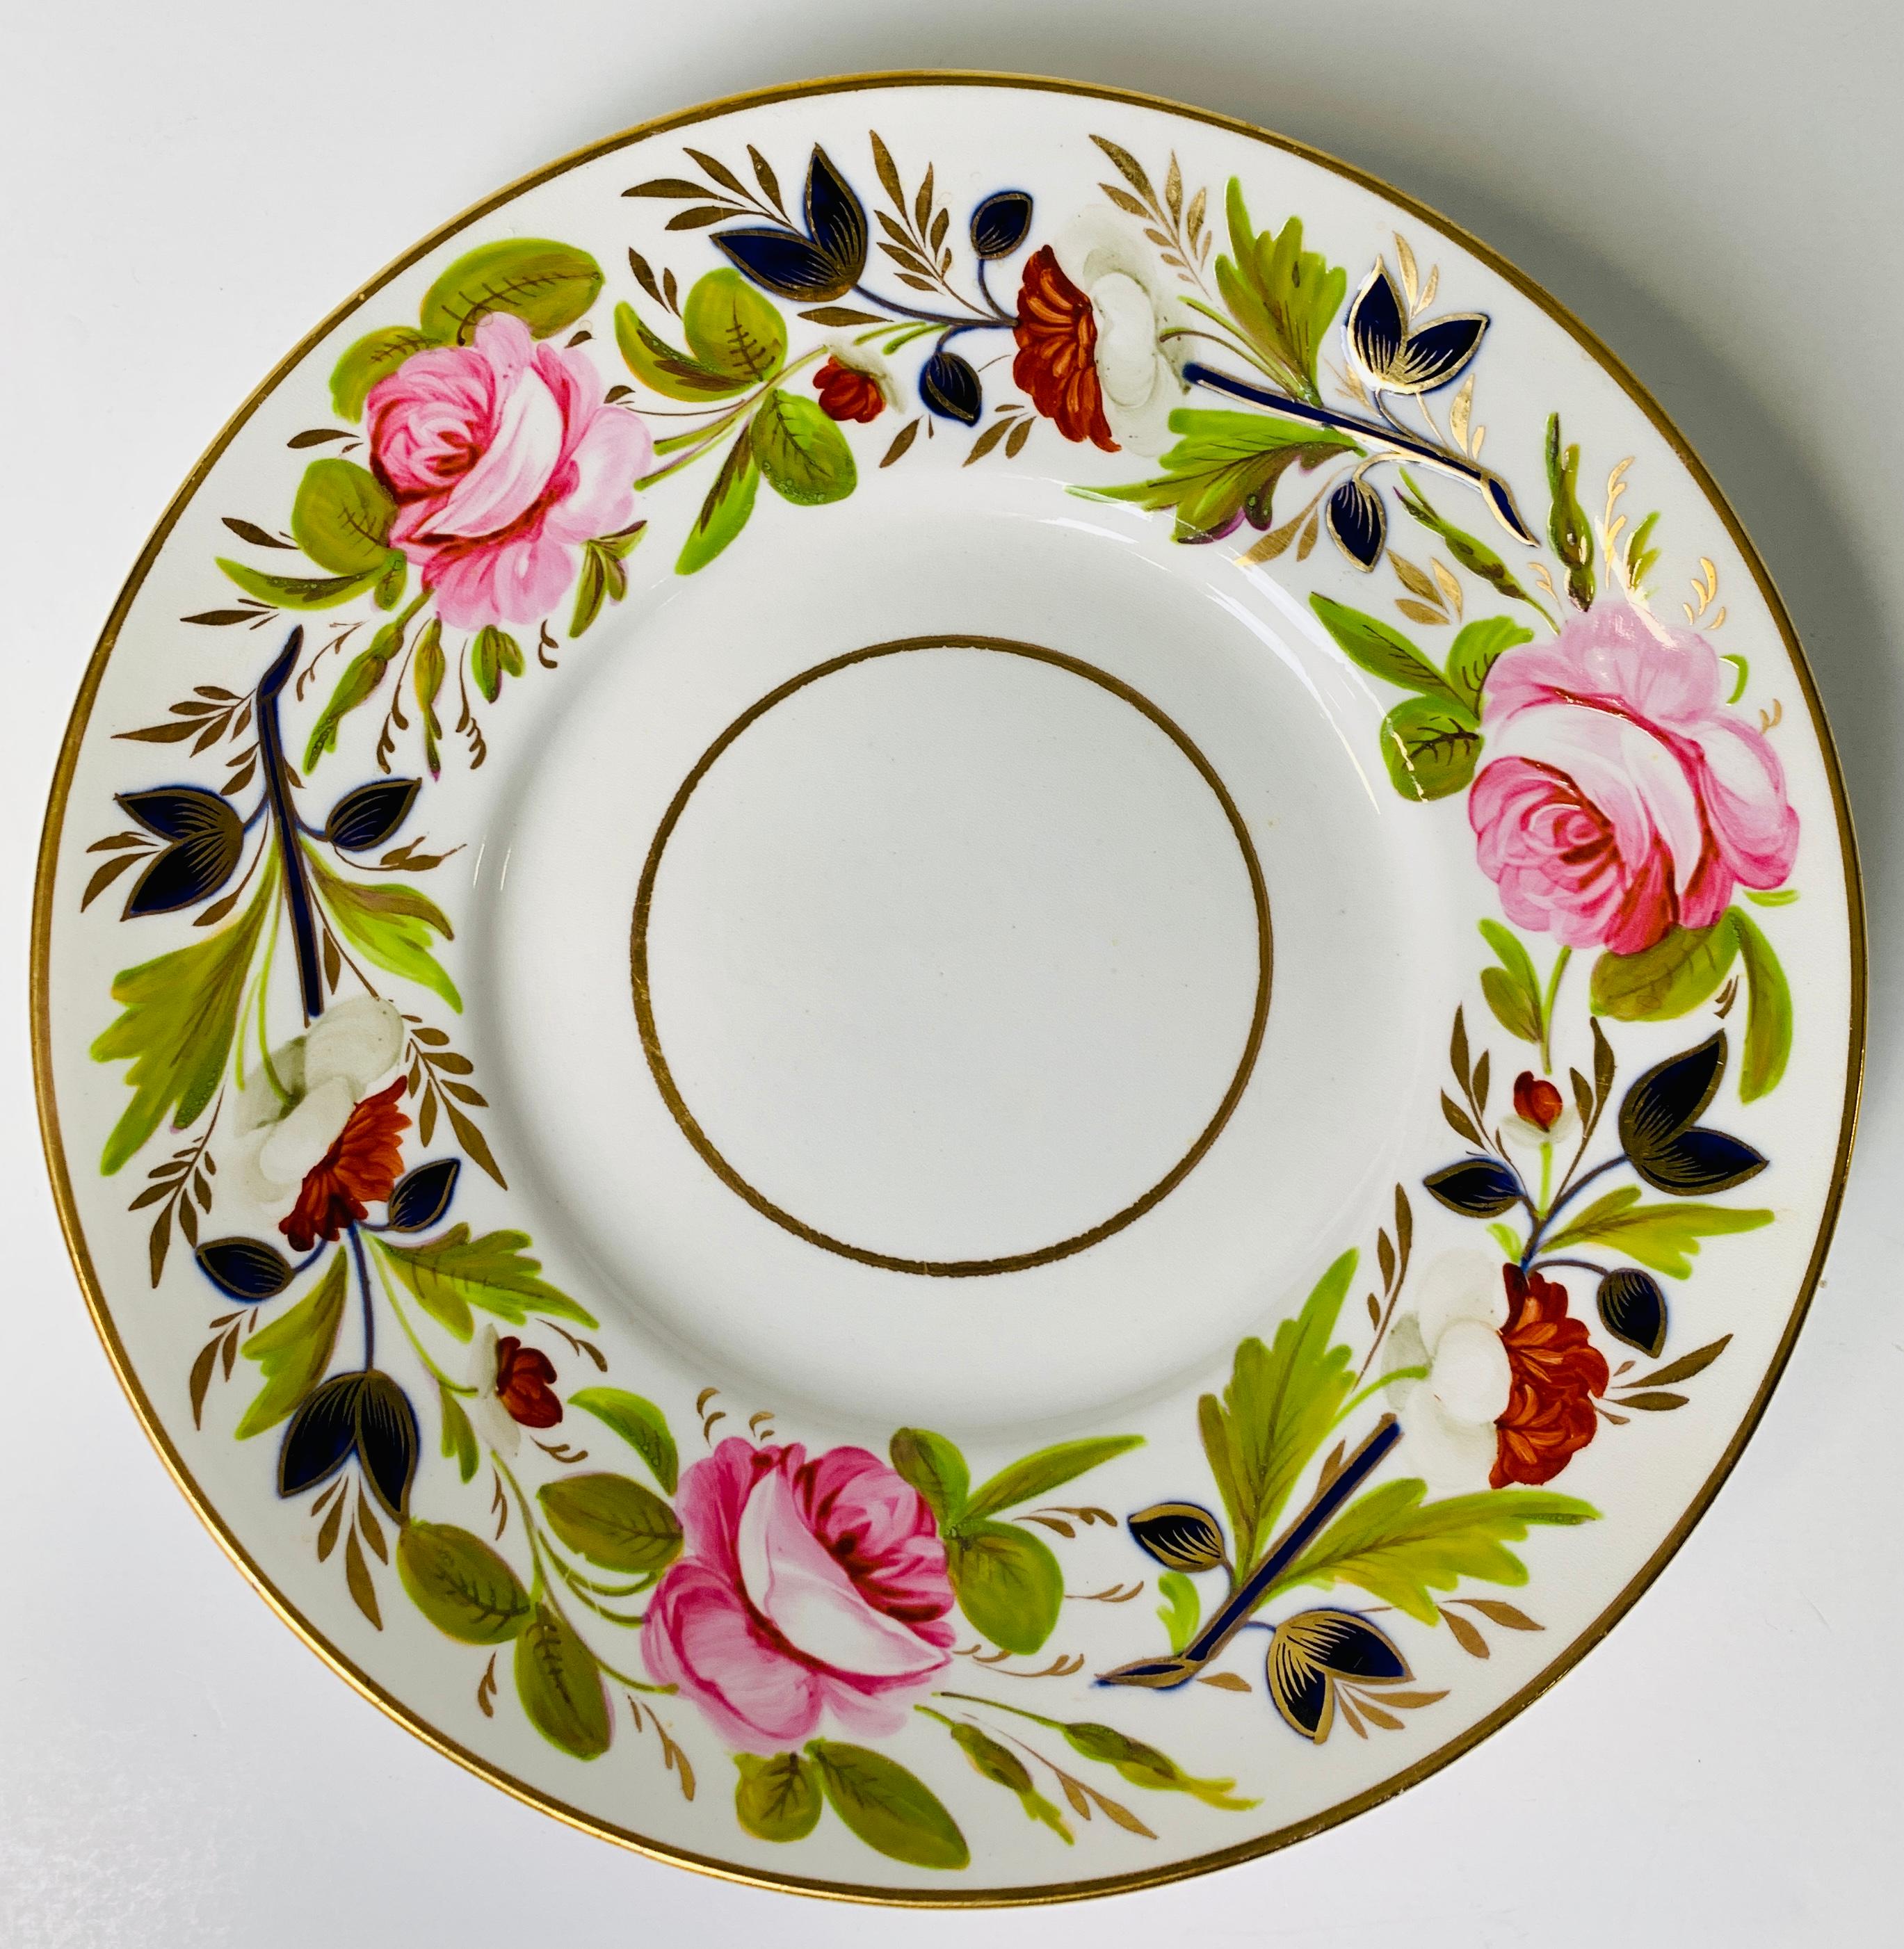 Ein Paar antikes englisches Porzellangeschirr, handbemalt mit schönen rosa Pfingstrosen und anderen Blumen, wurde um 1830 in England hergestellt.
An der Eingangstür platziert, würde dieses hübsche Geschirrpaar Ihnen und allen, die Ihr Haus betreten,